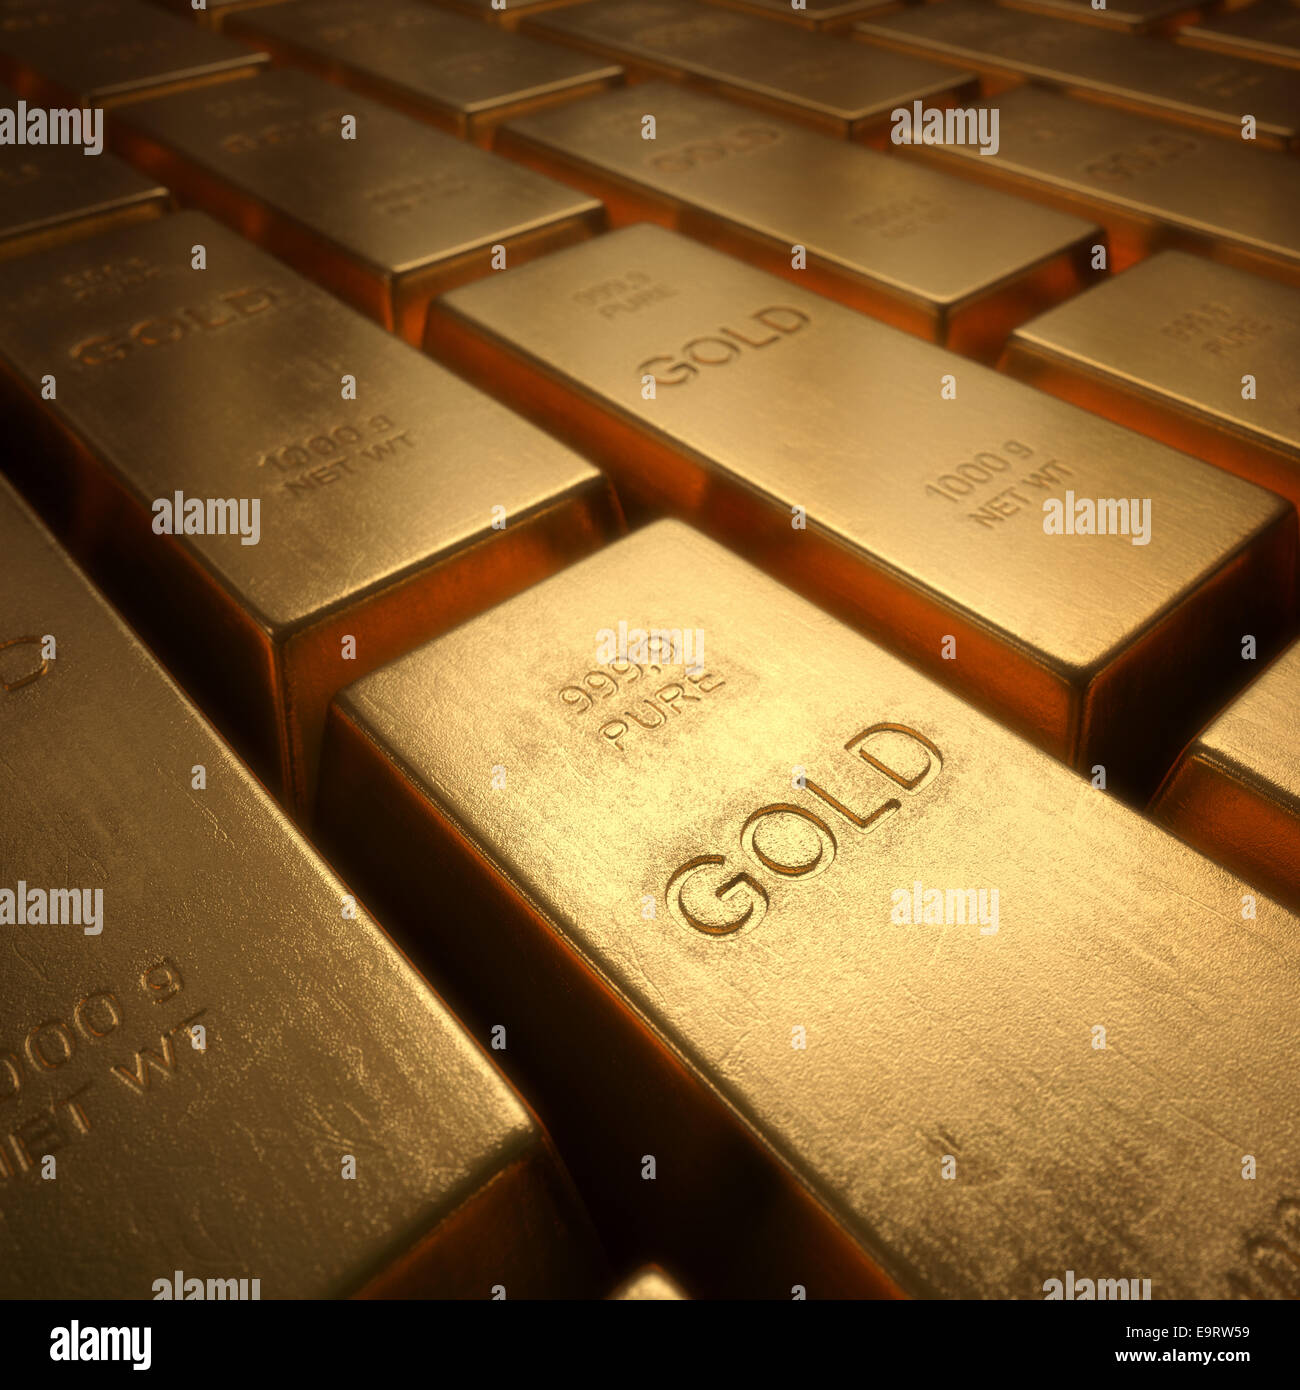 Barres d'or 1000 grammes. La profondeur de champ sur le mot d'or. Banque D'Images